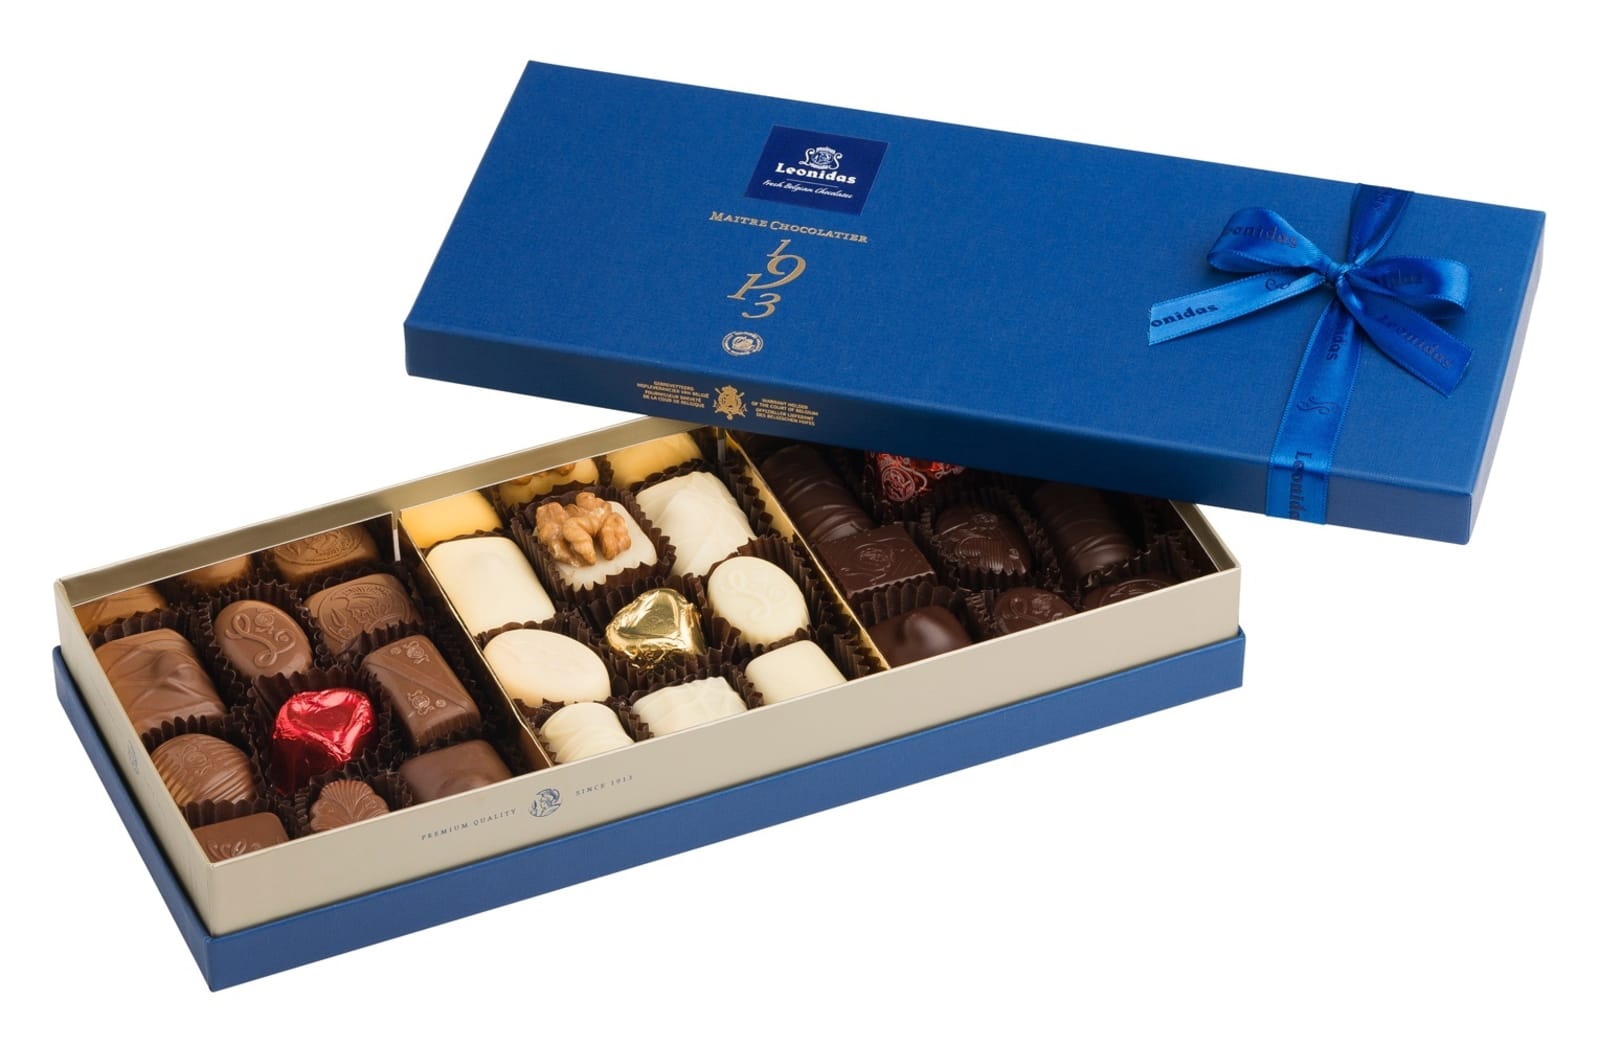 Leonidas Large Blue Heritage Gift Box - Assorted Chocolates